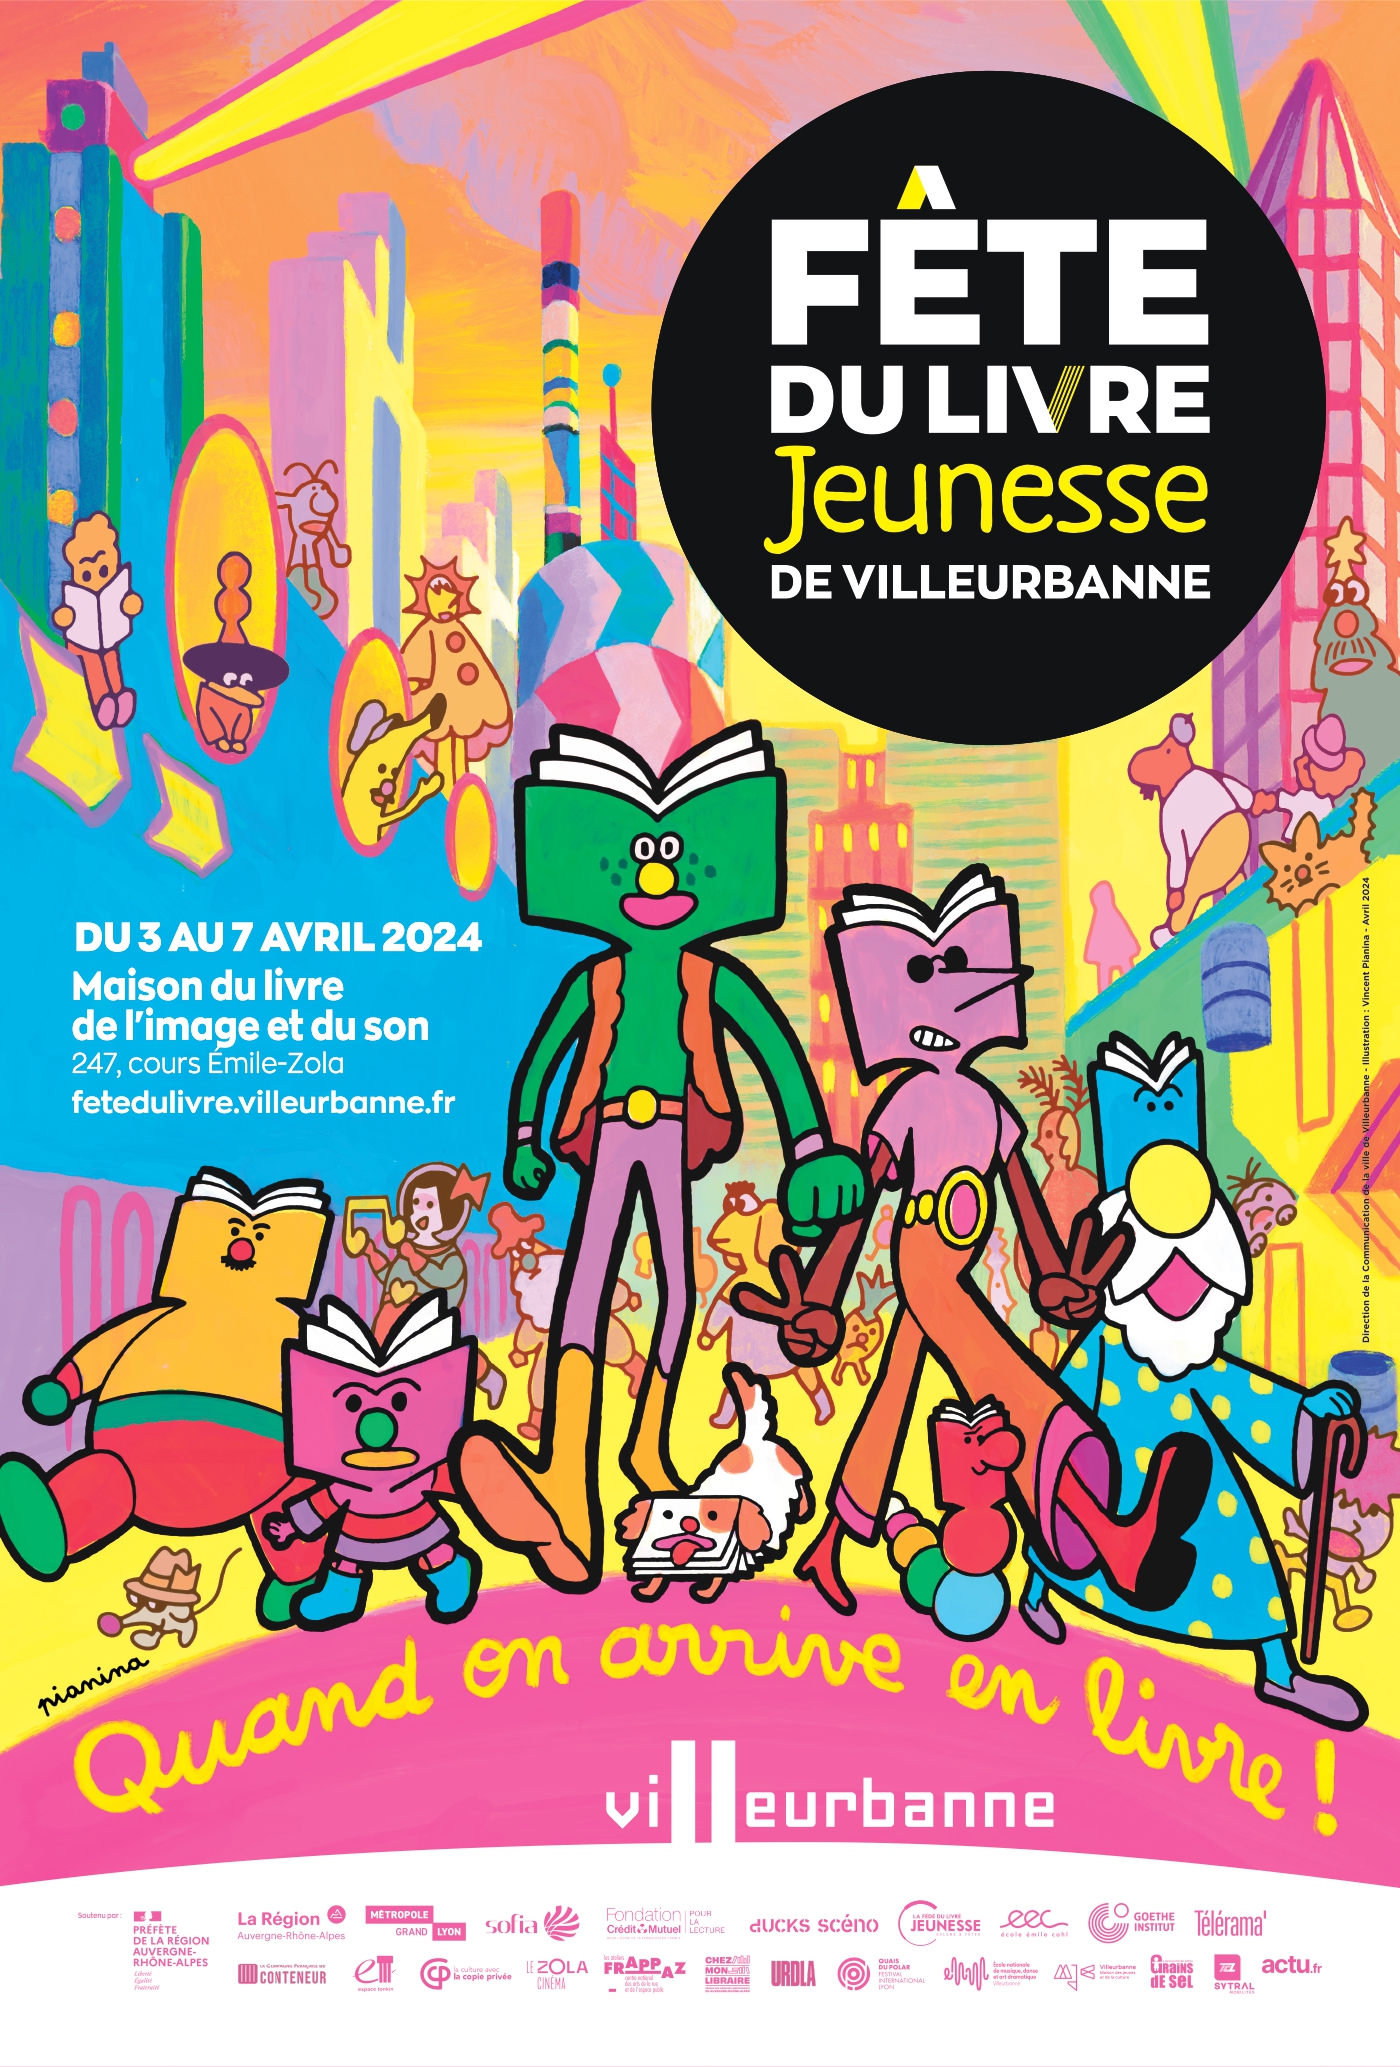 Fête du livre jeunesse de Villeurbanne